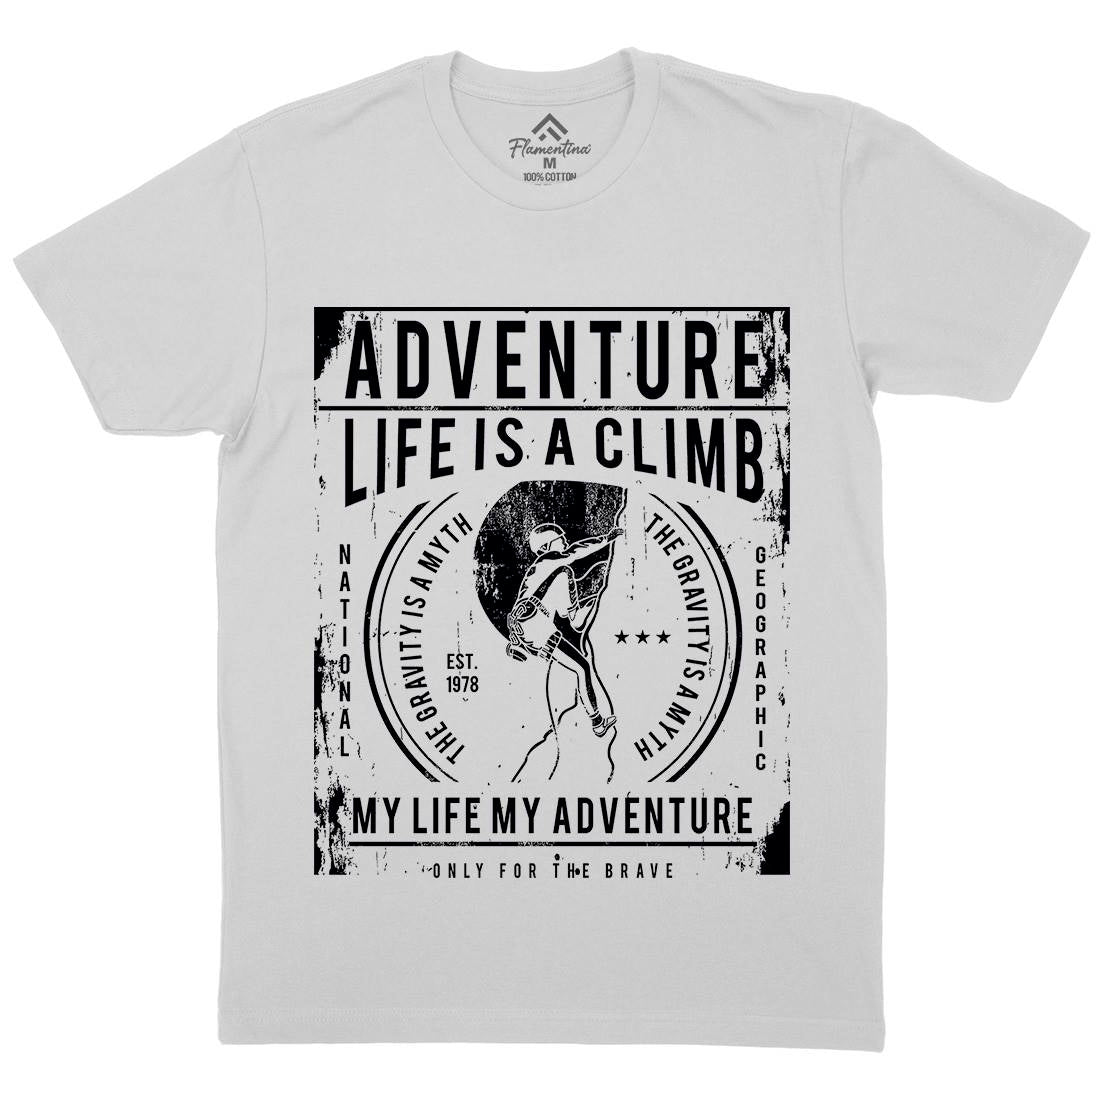 Life Is A Climb Mens Crew Neck T-Shirt Sport A085